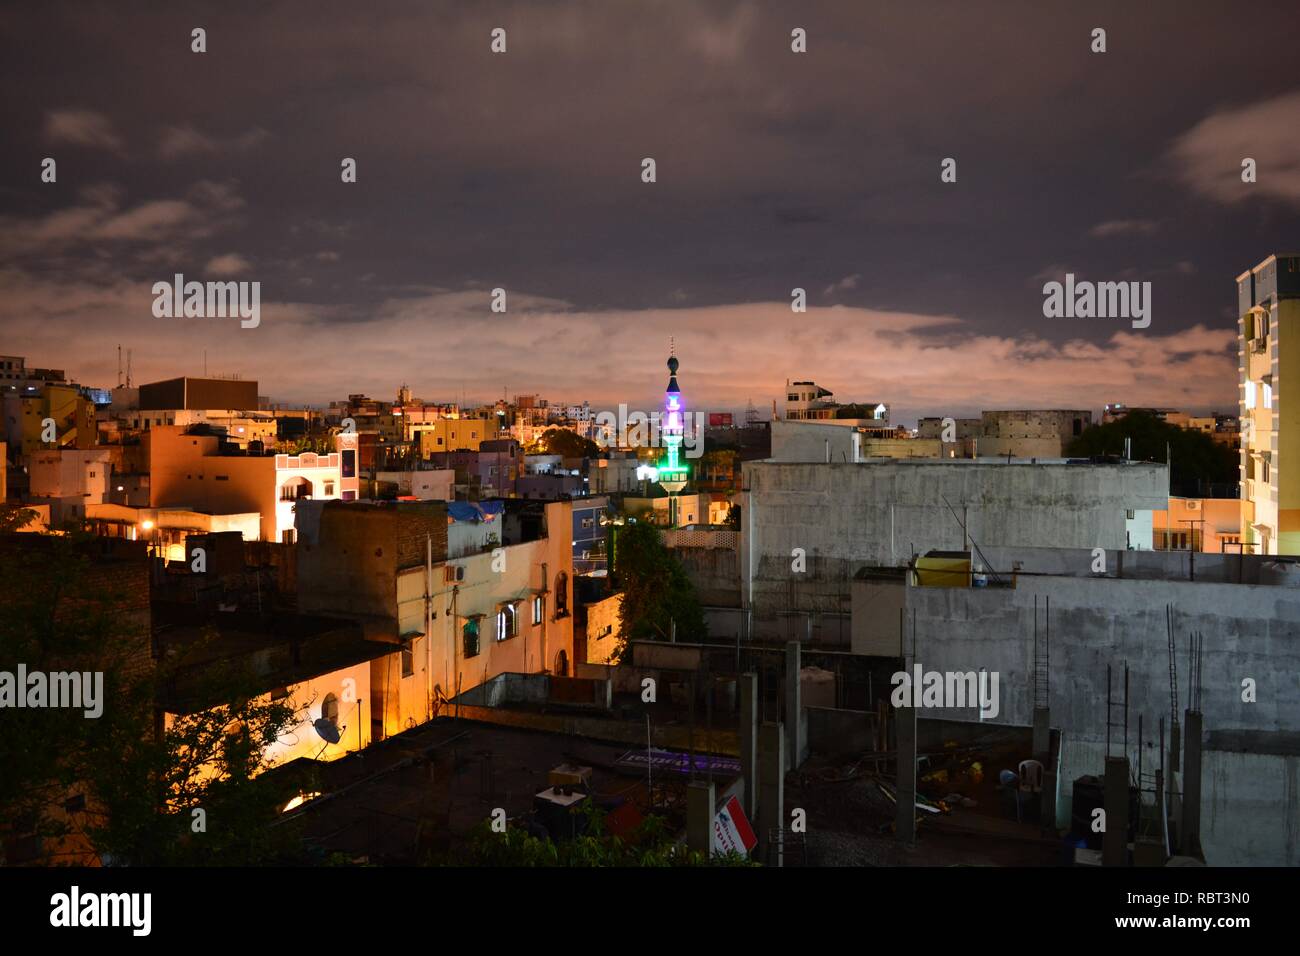 Bellissimo paesaggio urbano nella notte; moschea e pulire le nuvole. Foto Stock